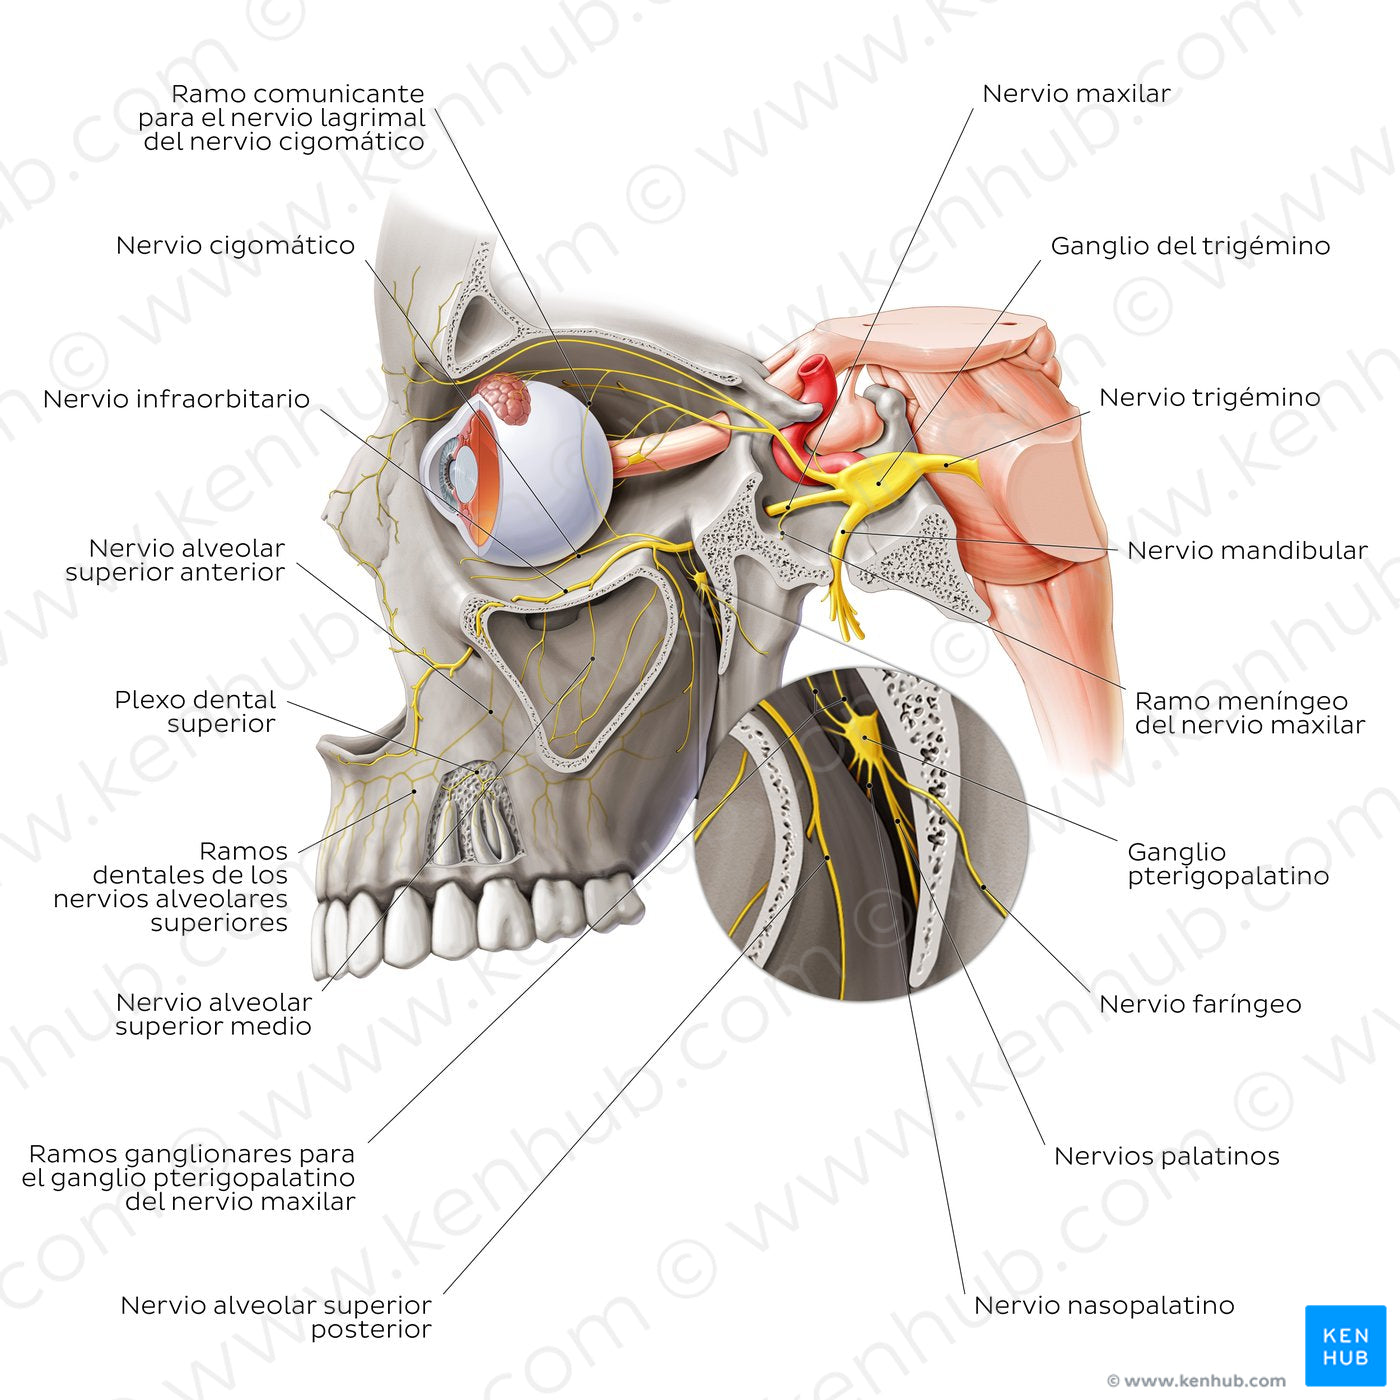 Maxillary nerve (Spanish)